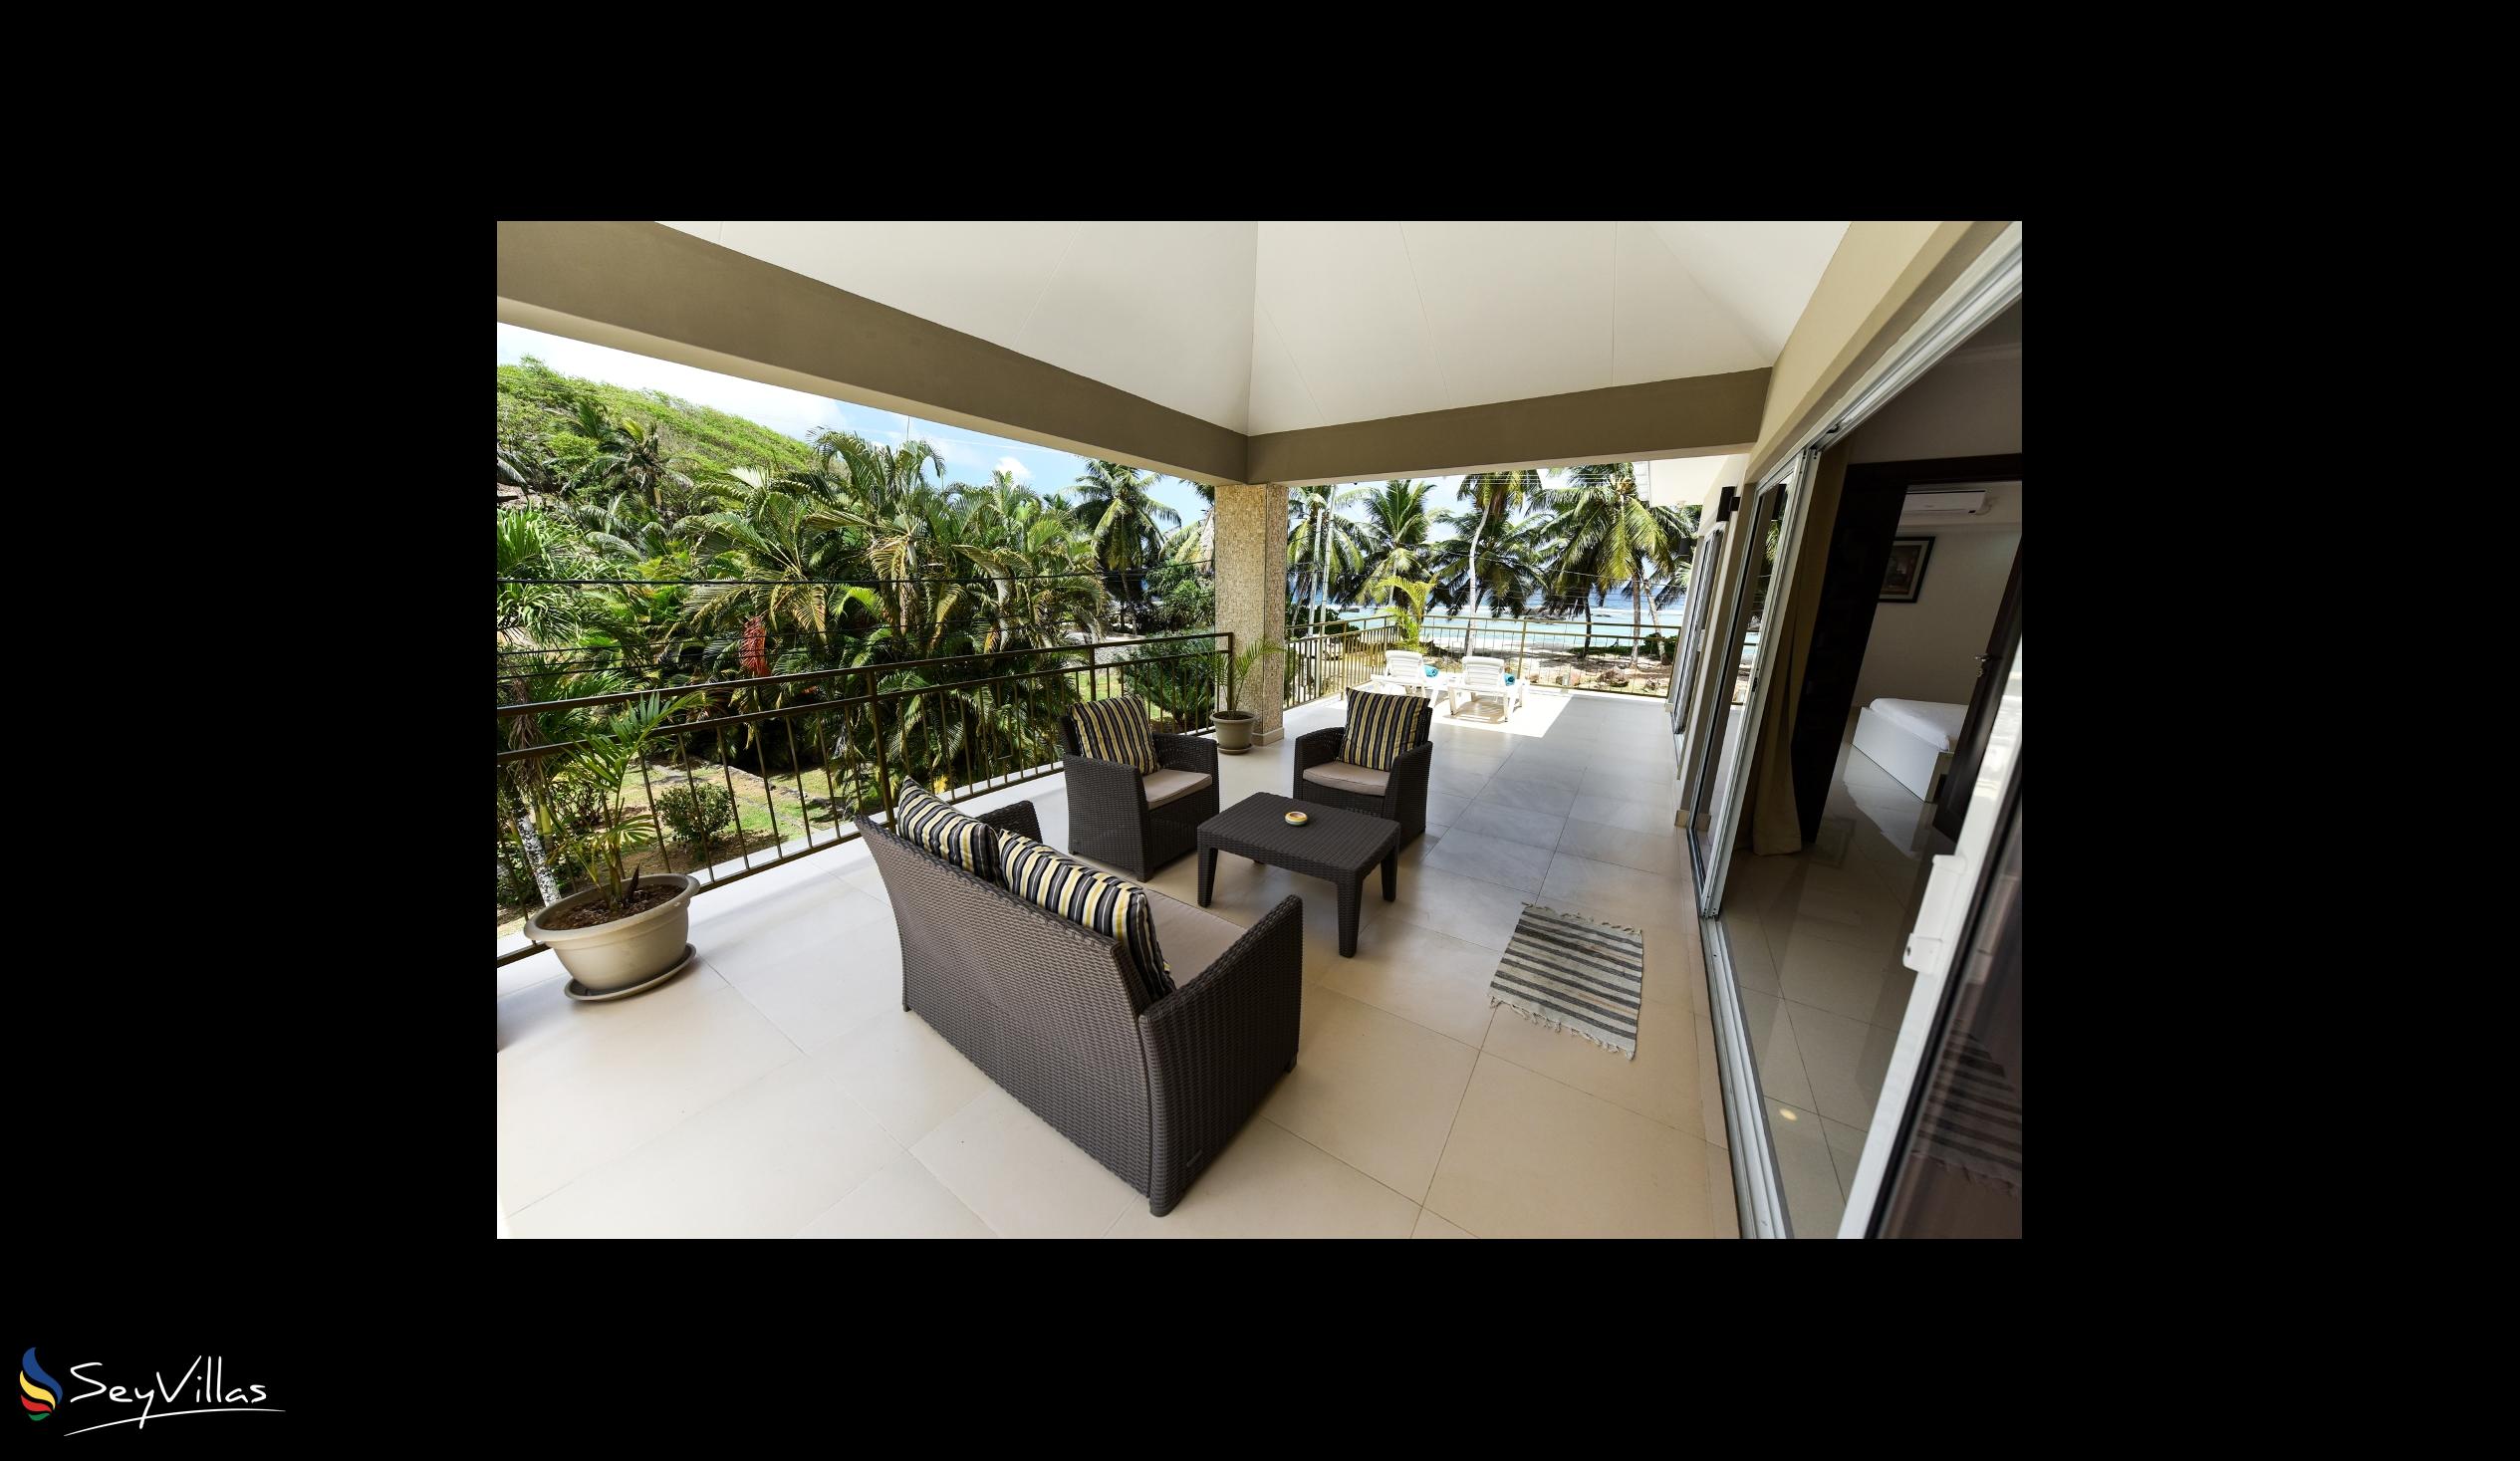 Foto 33: Moulin Kann Villas - Appartement 2 chambres - Mahé (Seychelles)